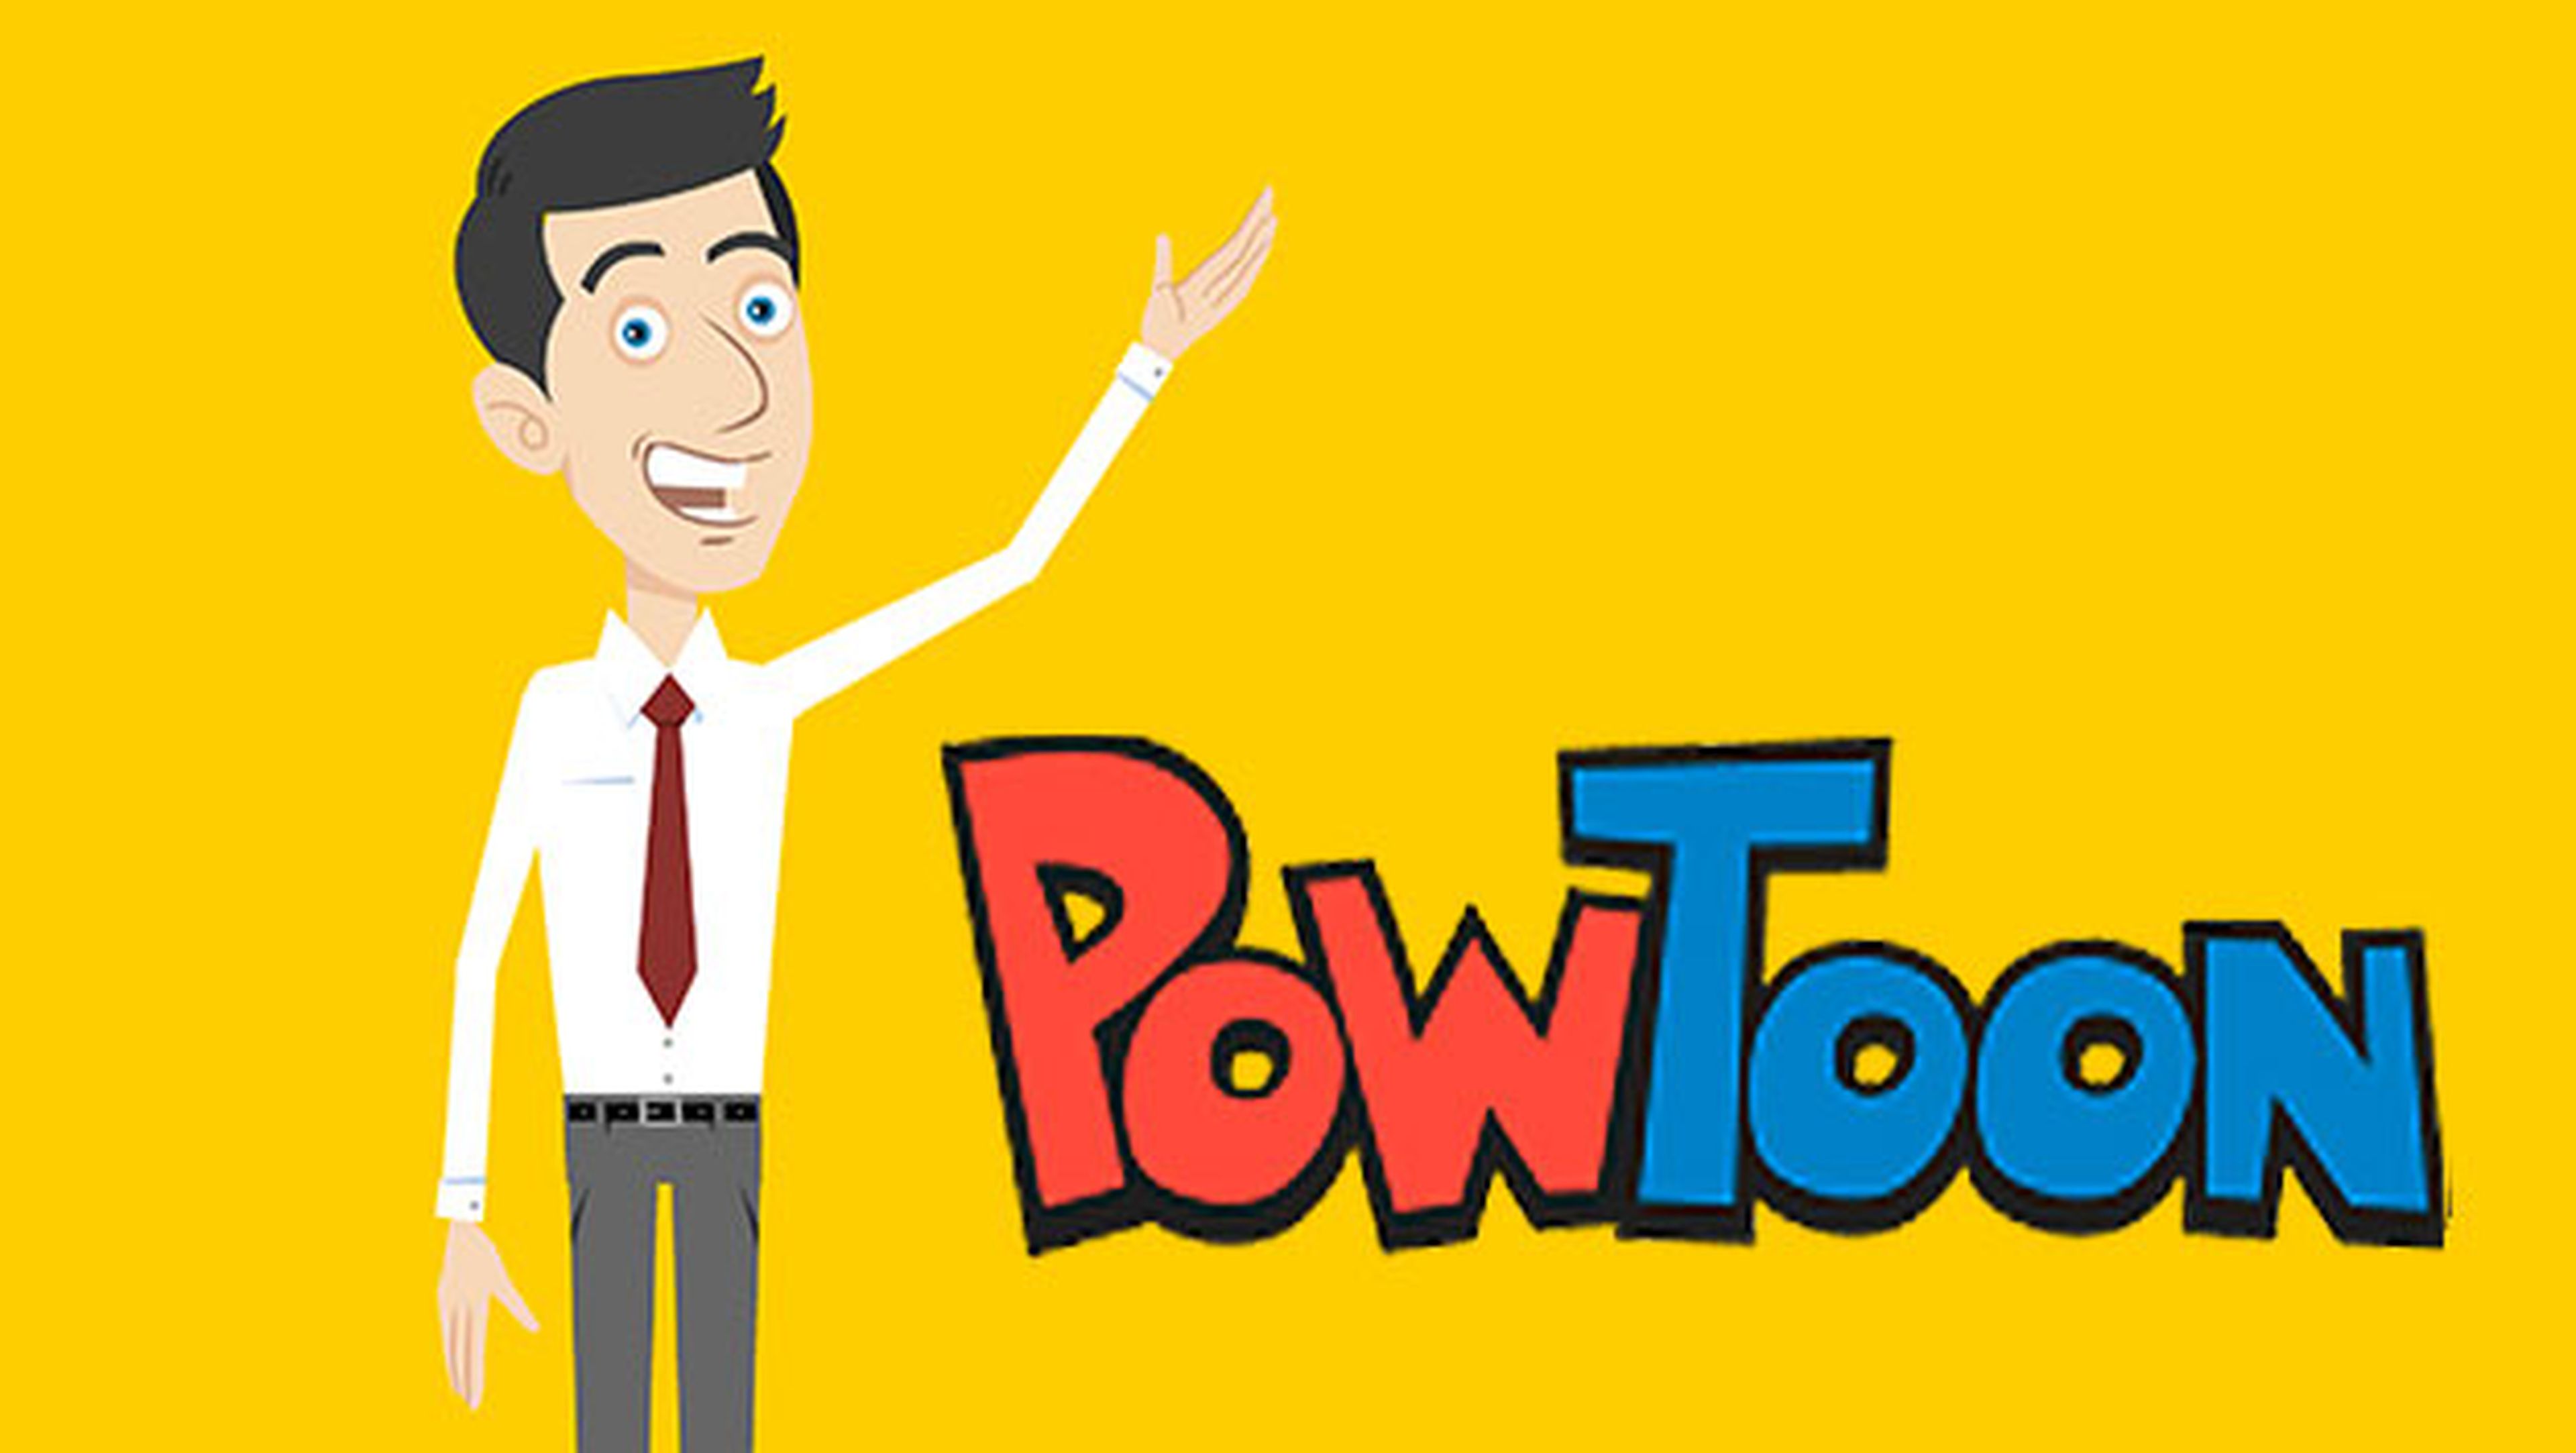 Cómo crear presentaciones y vídeos animados gratis con PowToon